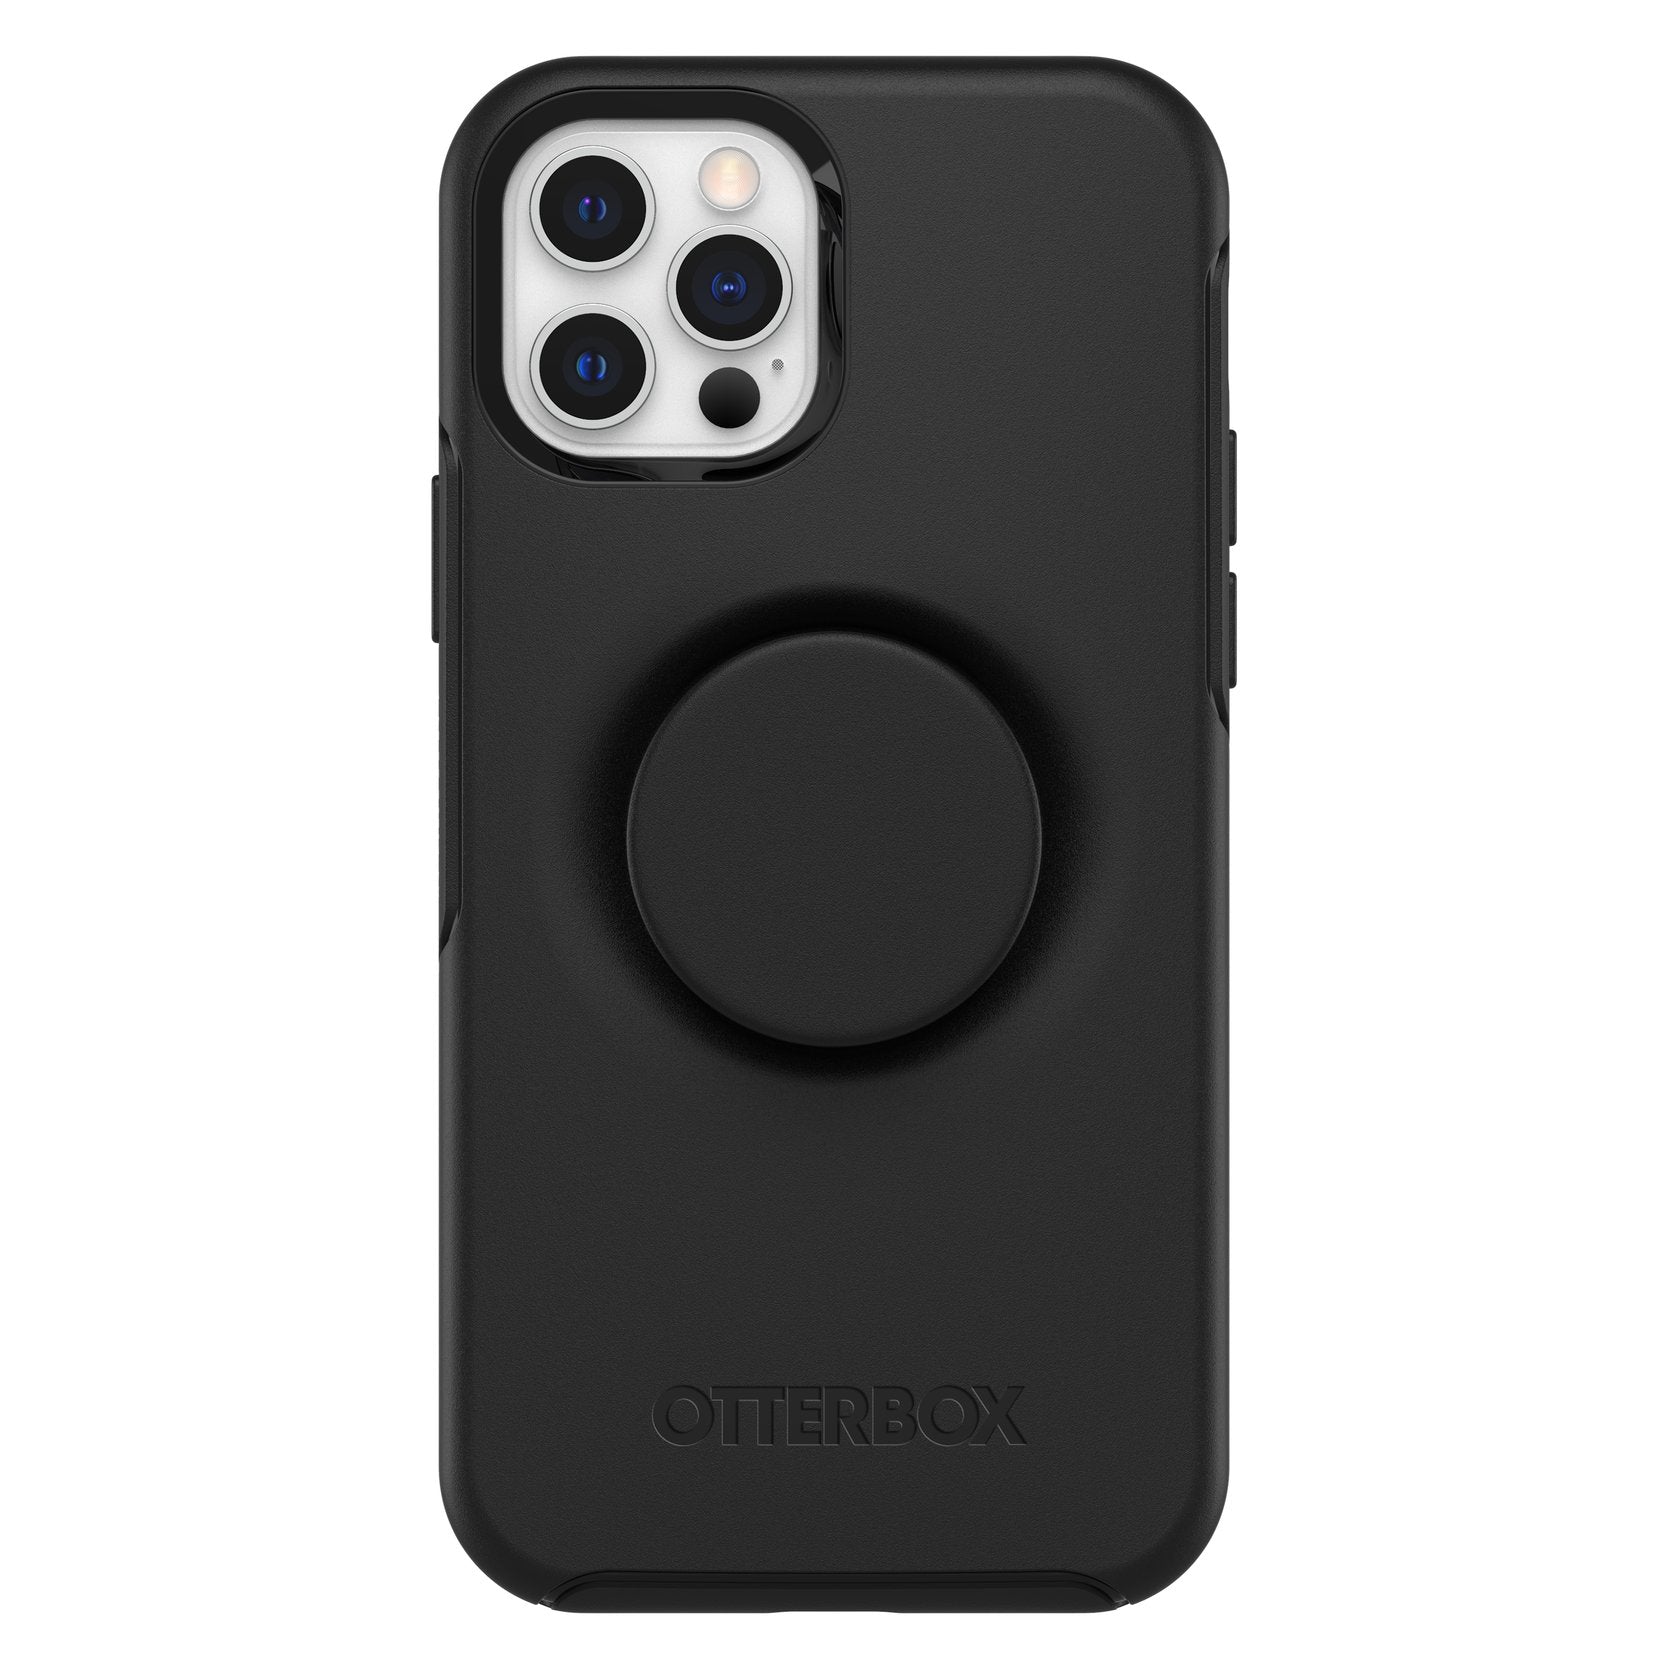 OtterplsPop Symmetry Case for iPhone 12/12 Pro